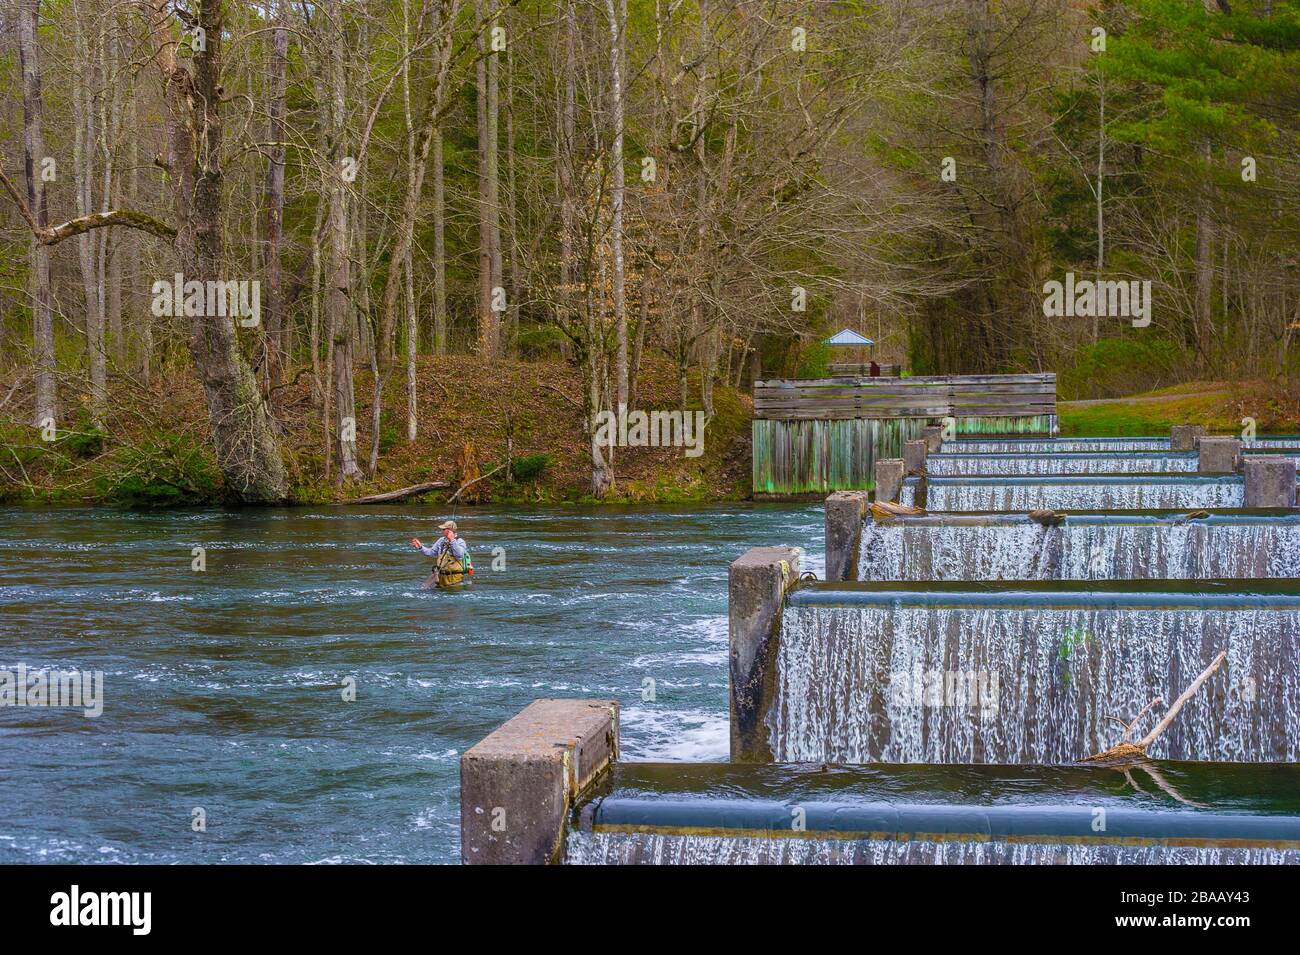 Bristol, Tennessee, États-Unis - 23 mars 2020: Un pêcheur de la Weir barrages qui ont été construits sous le barrage de South Holston pour ajouter de l'oxygène à la rivière à susta Banque D'Images